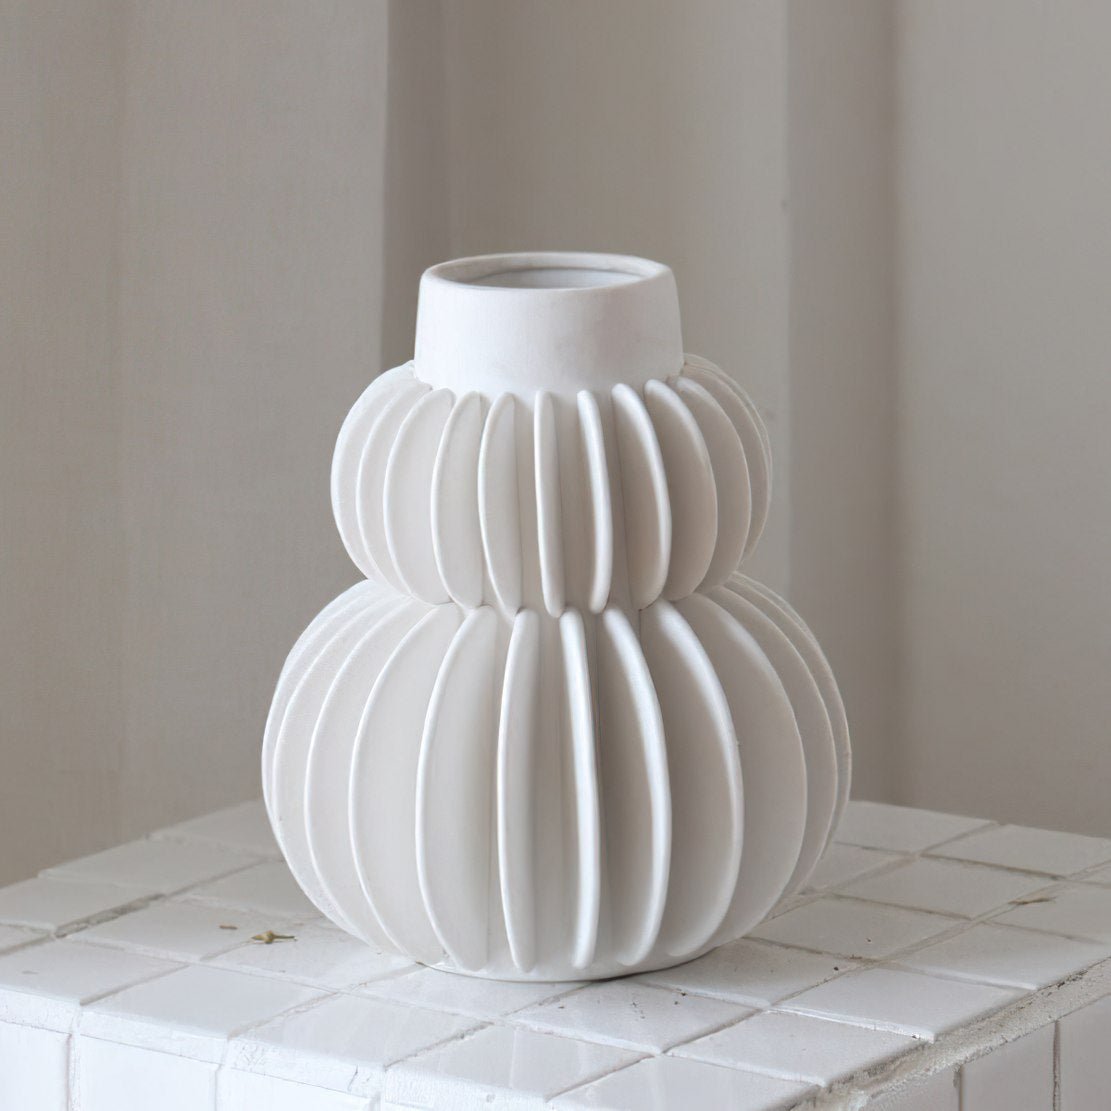 White, ceramic line ball vase